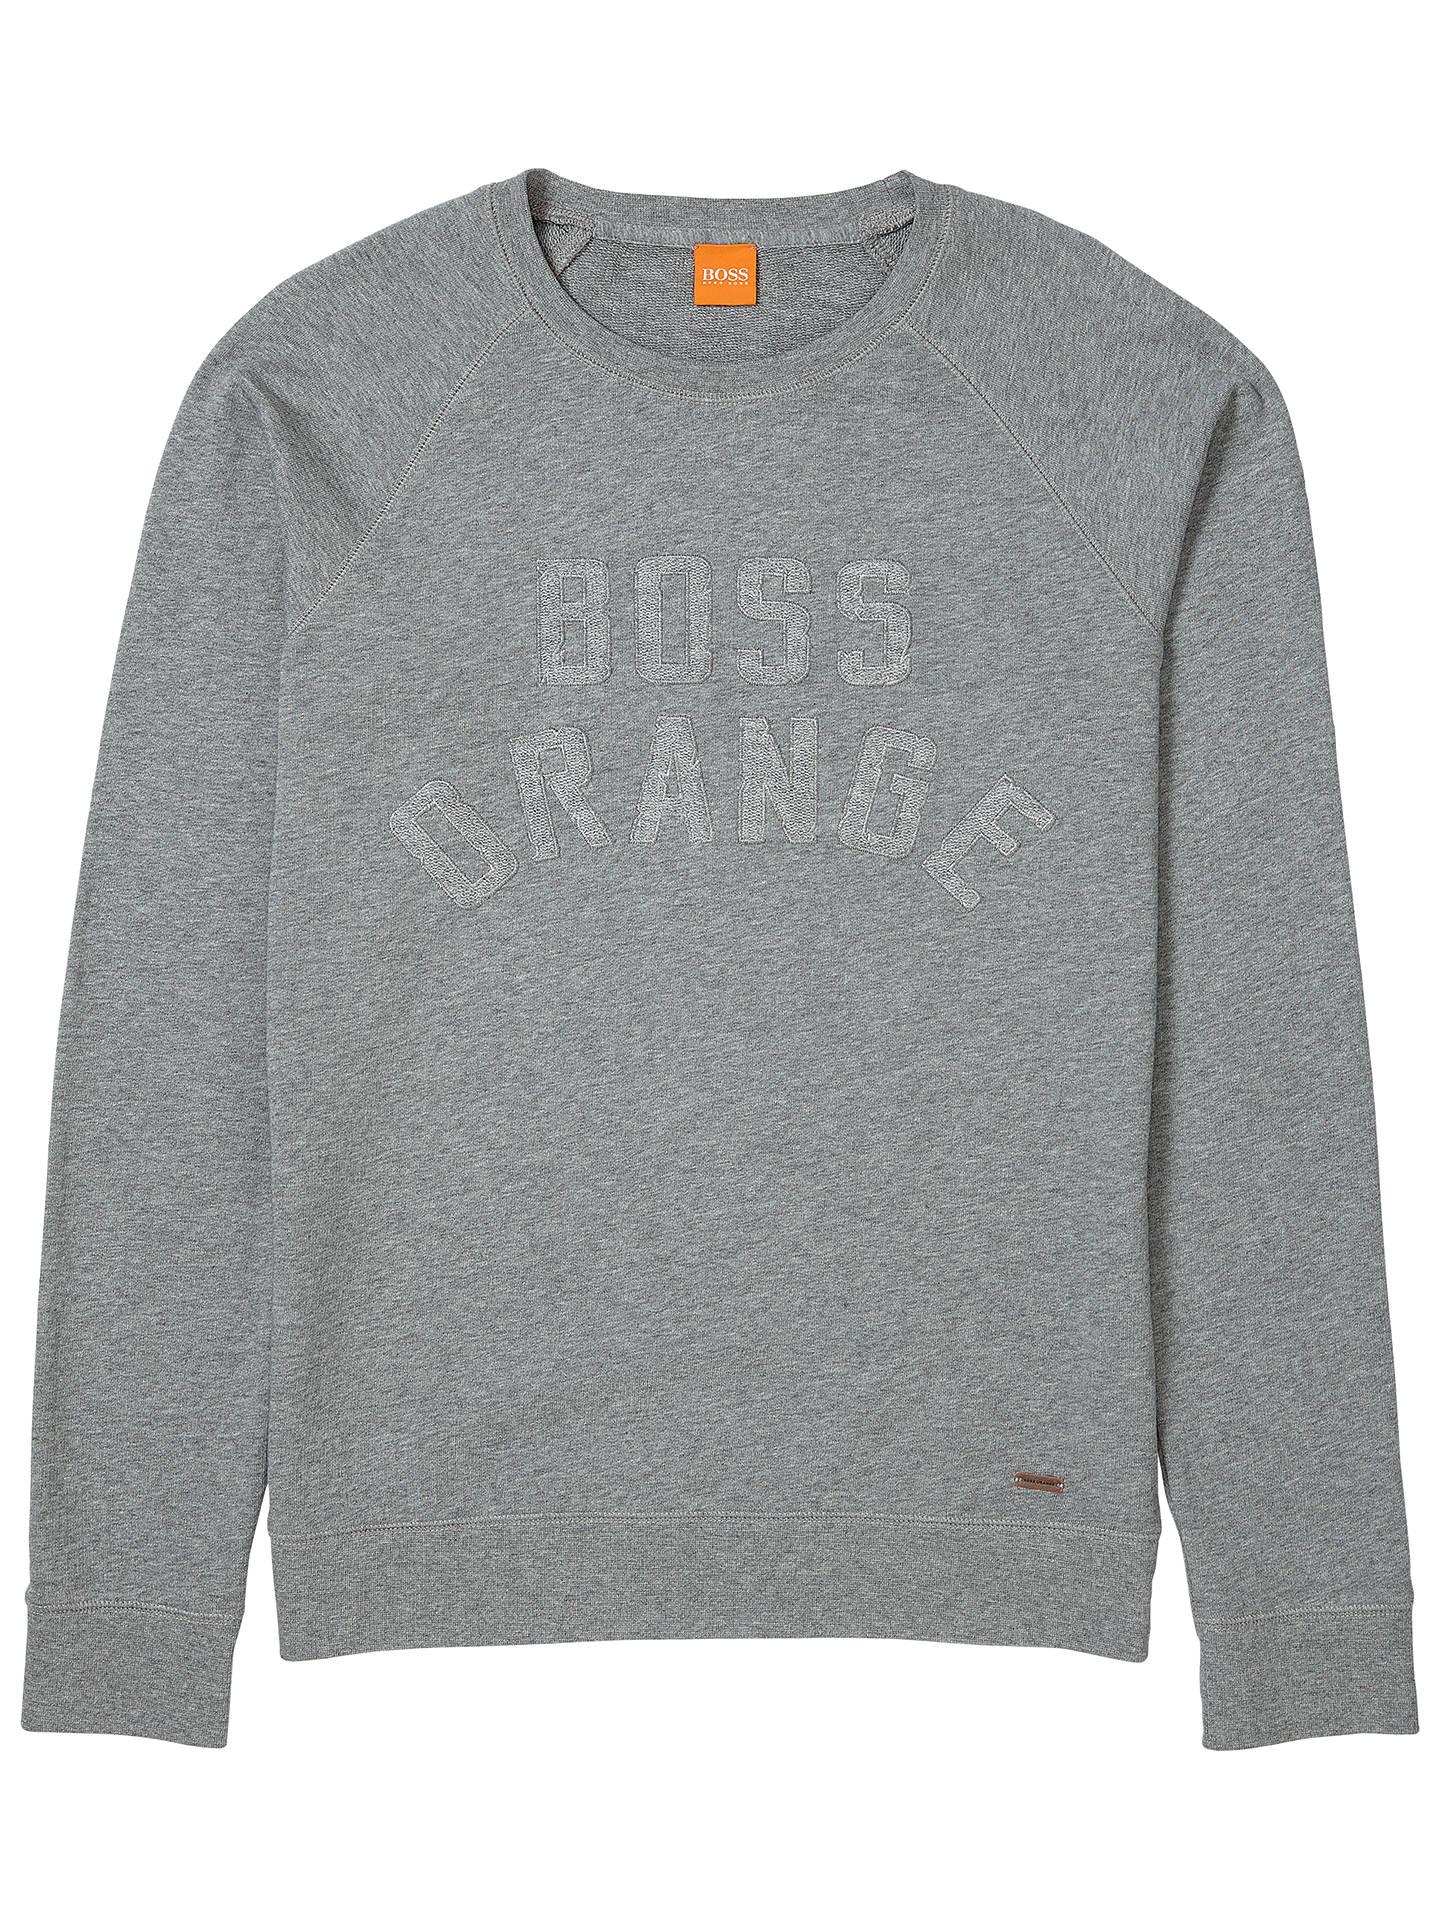 Pastel Orange Logo - BOSS Orange Wilkens Logo Sweatshirt, Light Pastel Grey at John Lewis